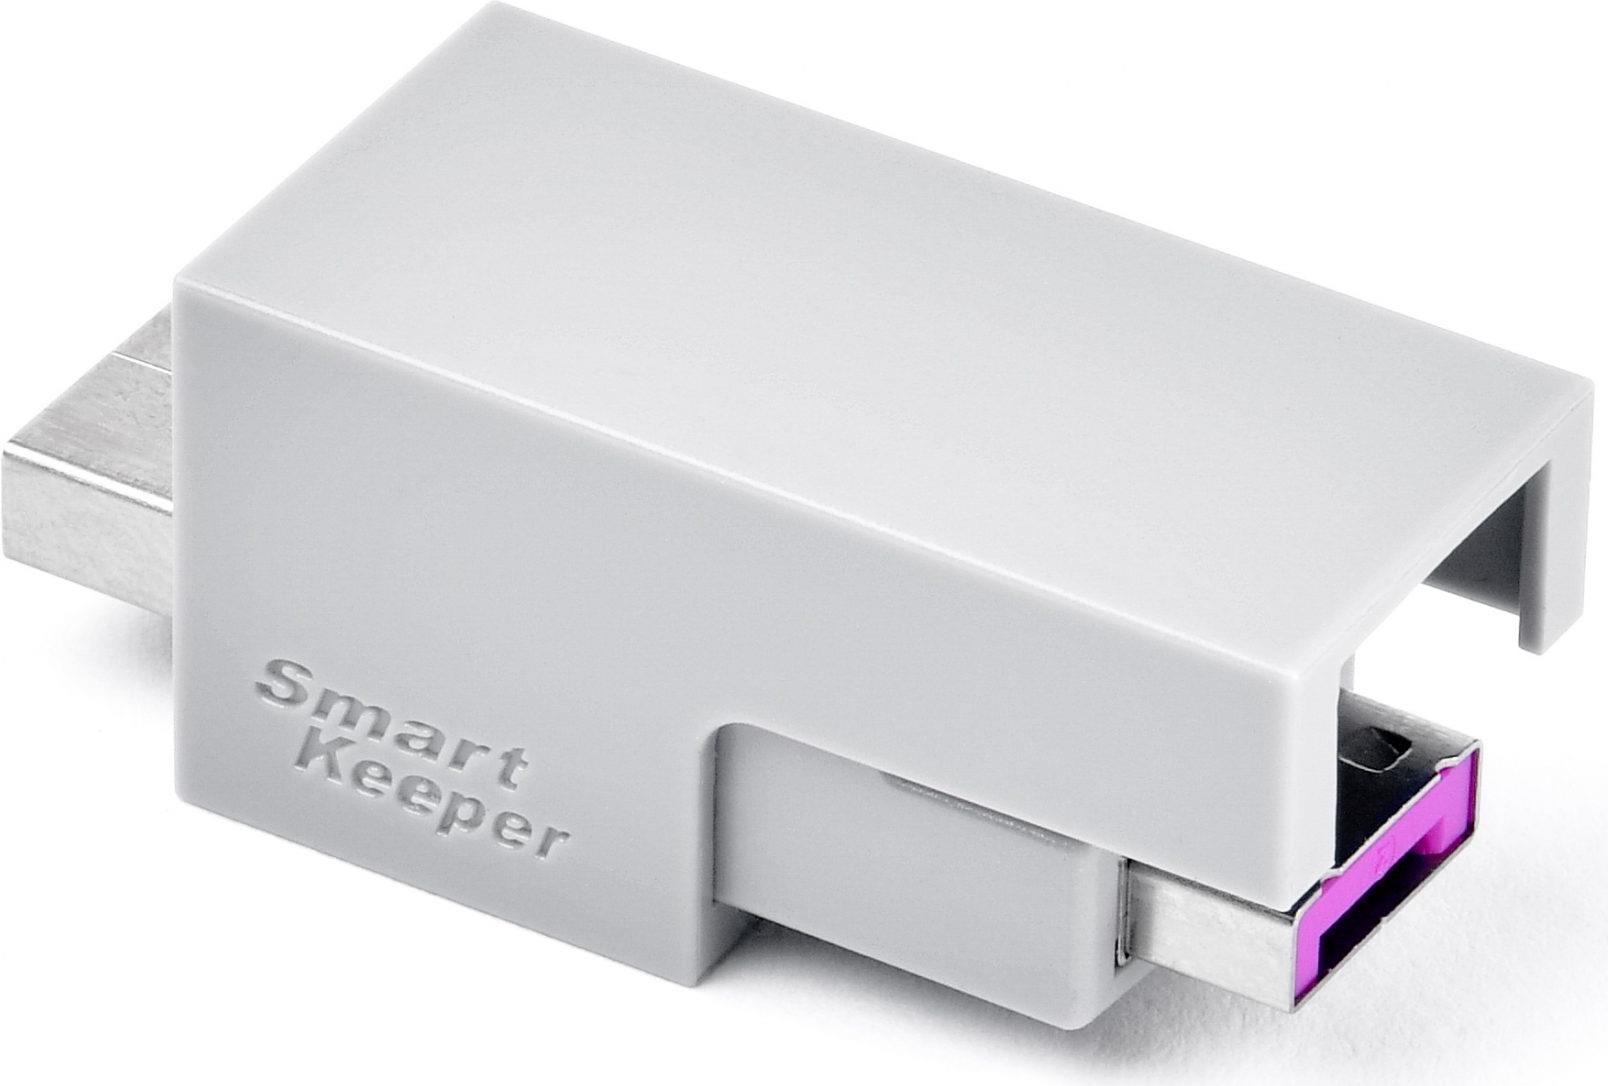 Smartkeeper LK03PK Schnittstellenblockierung Port lock USB Typ-A Pink 1 Stück(e) (LK03PK)